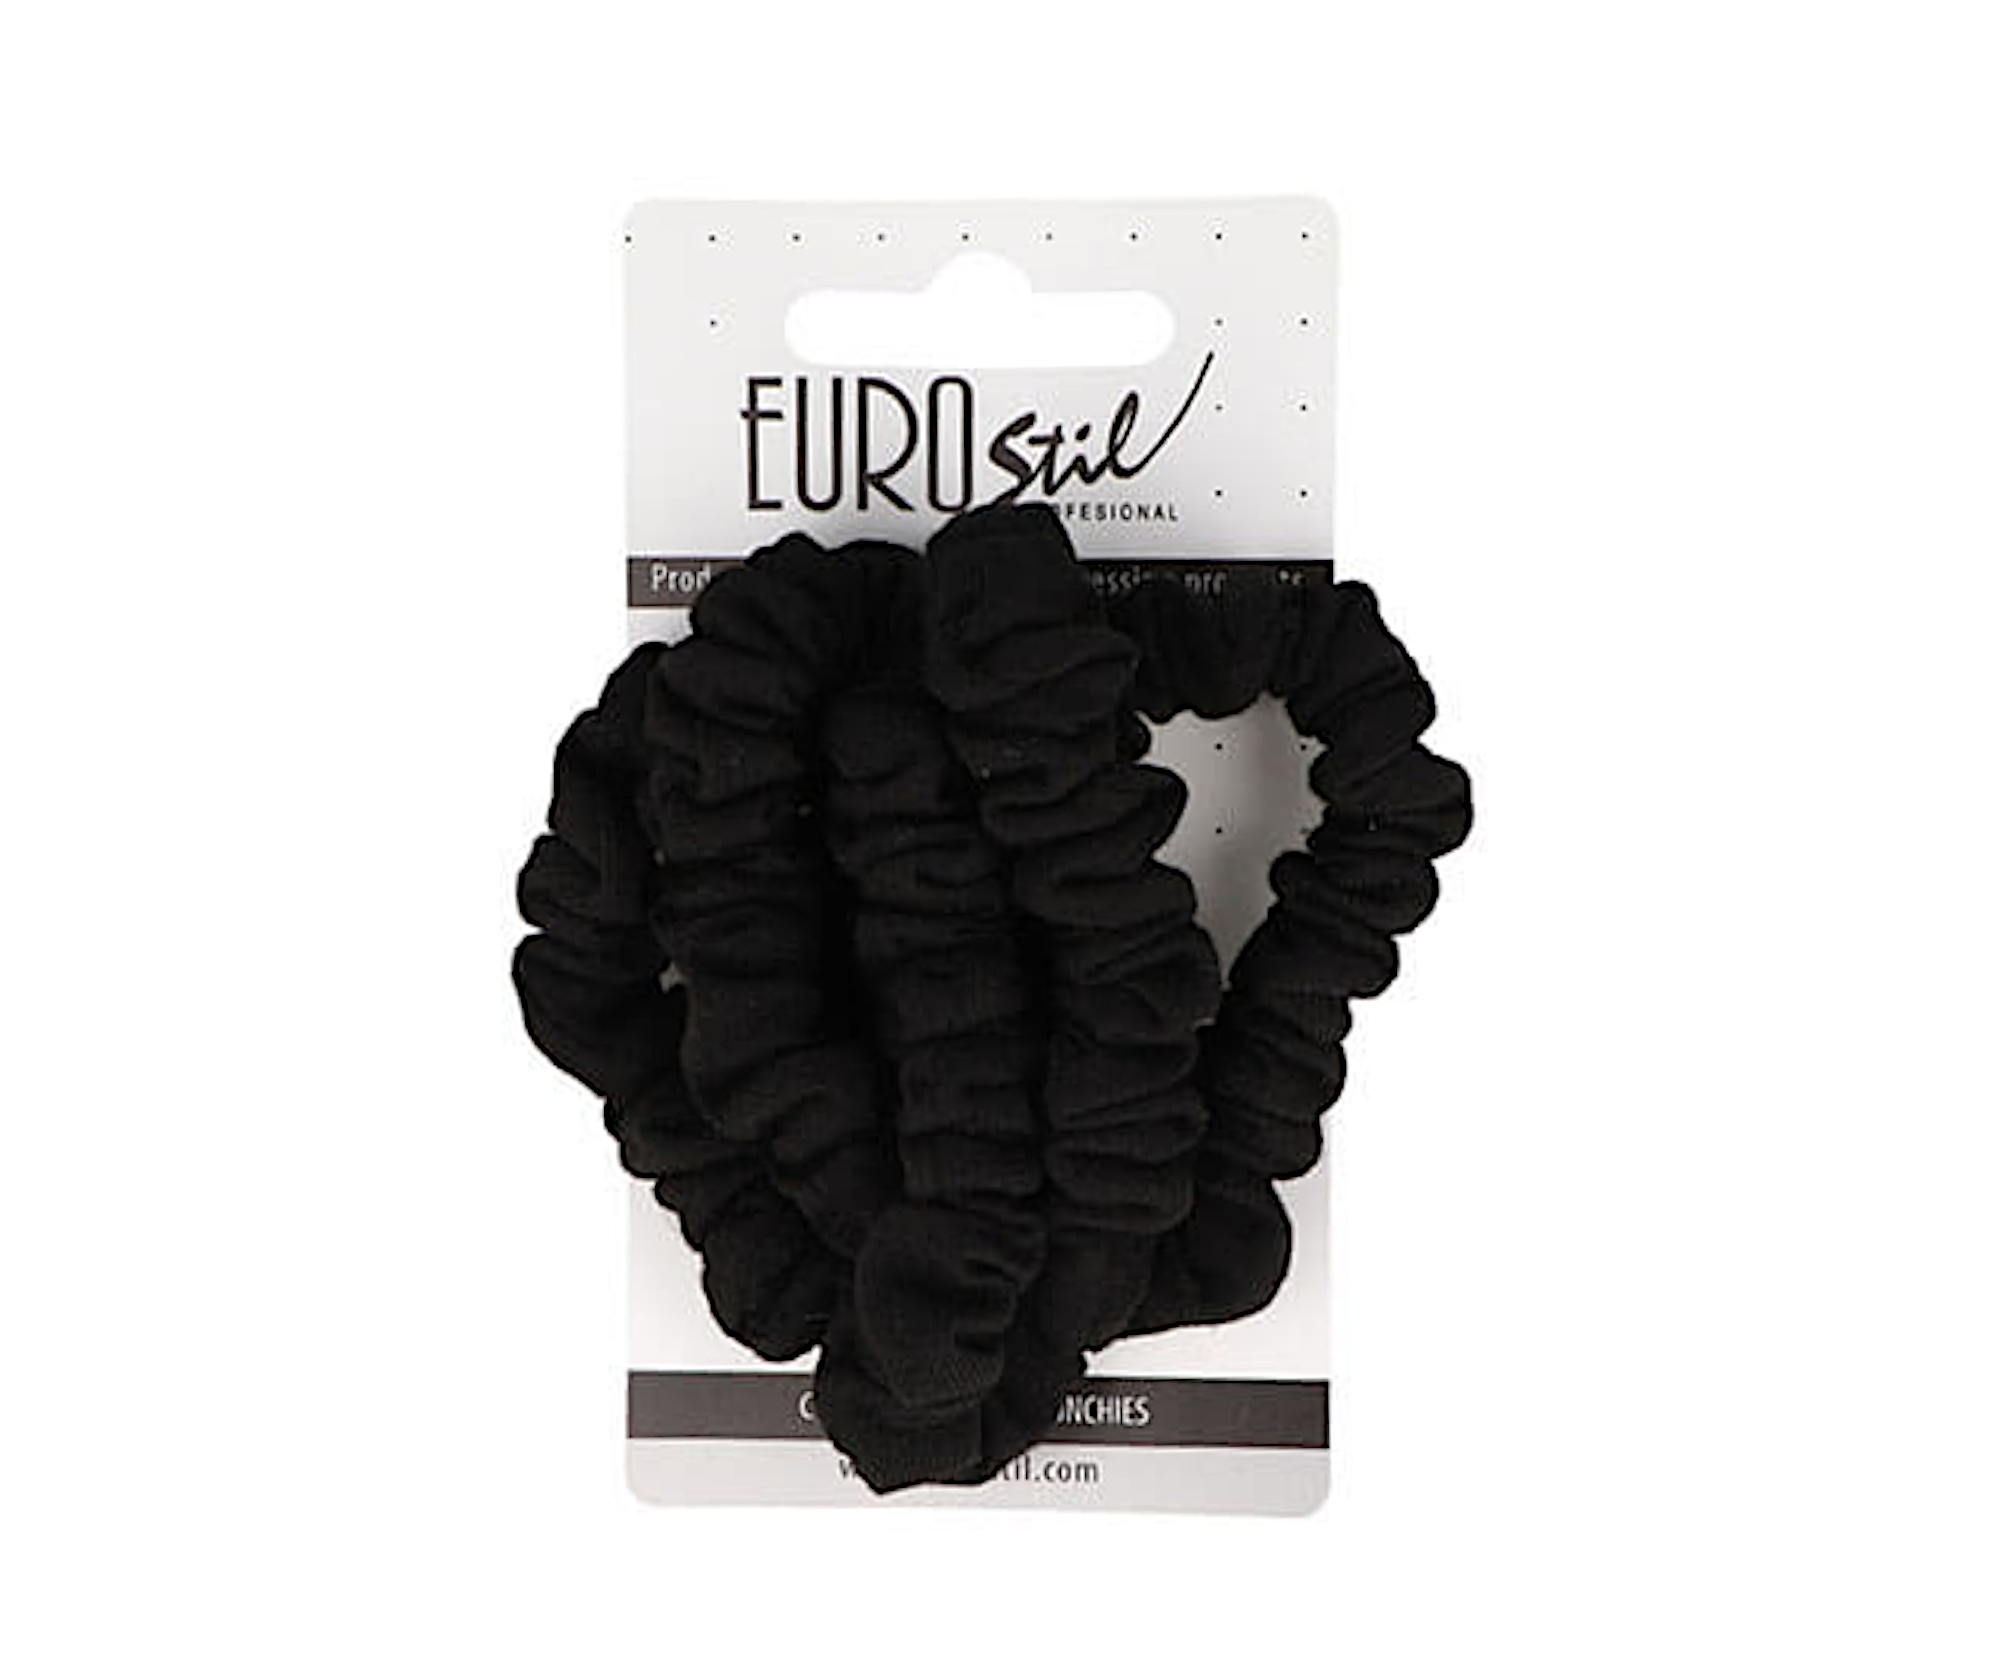 Látkové gumičky do vlasů Eurostil Profesional - černé, 5 ks (07454/50) + dárek zdarma